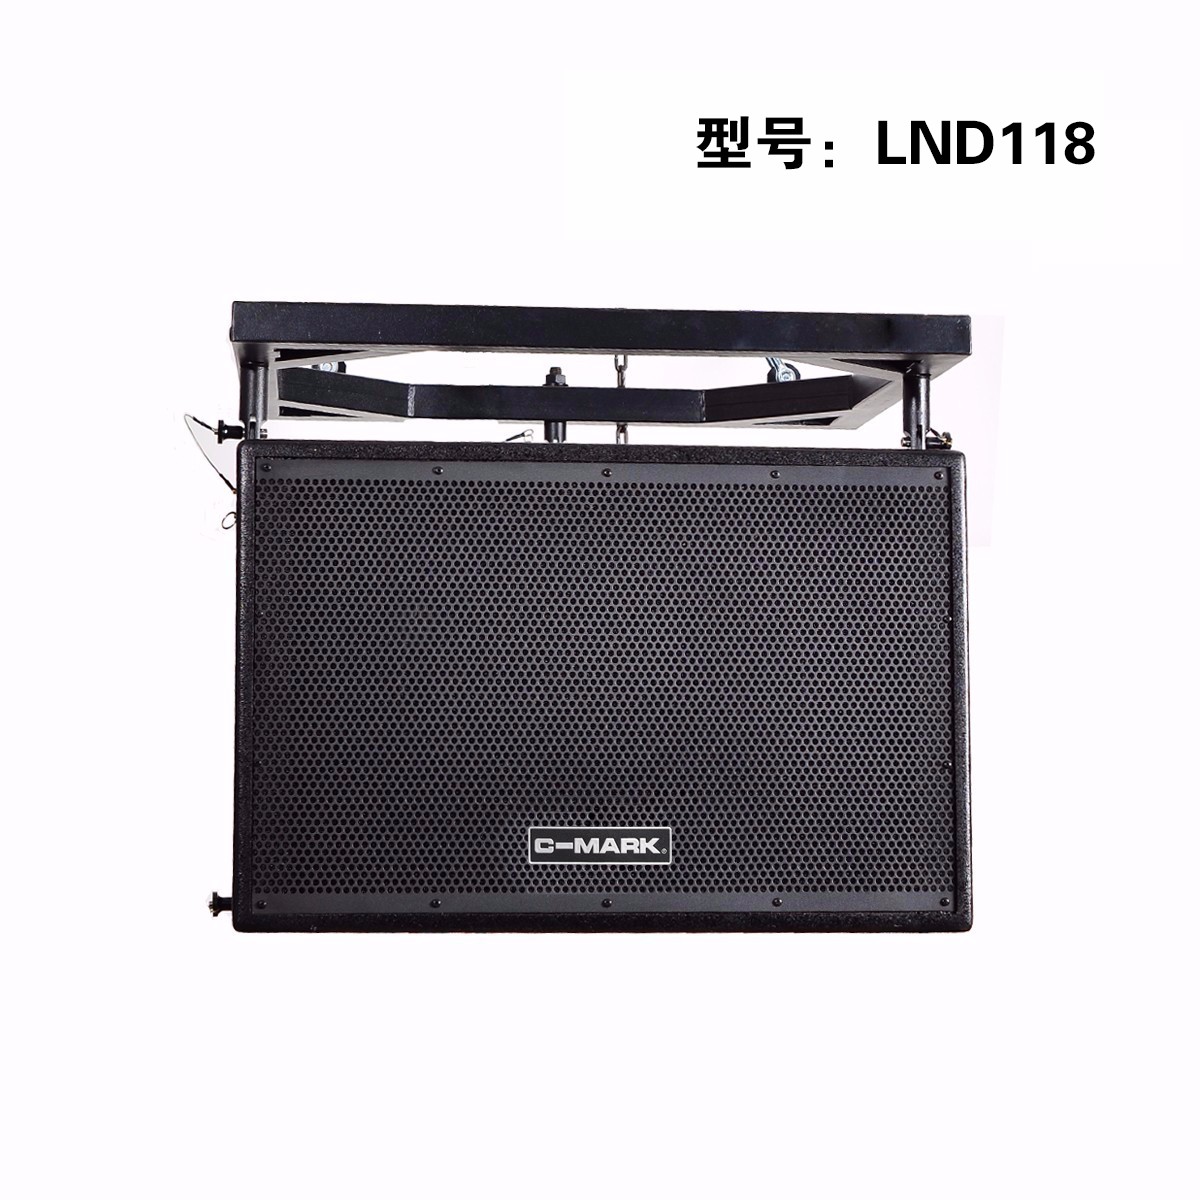 LND210 + LND118 公牛系列 有源线阵音箱